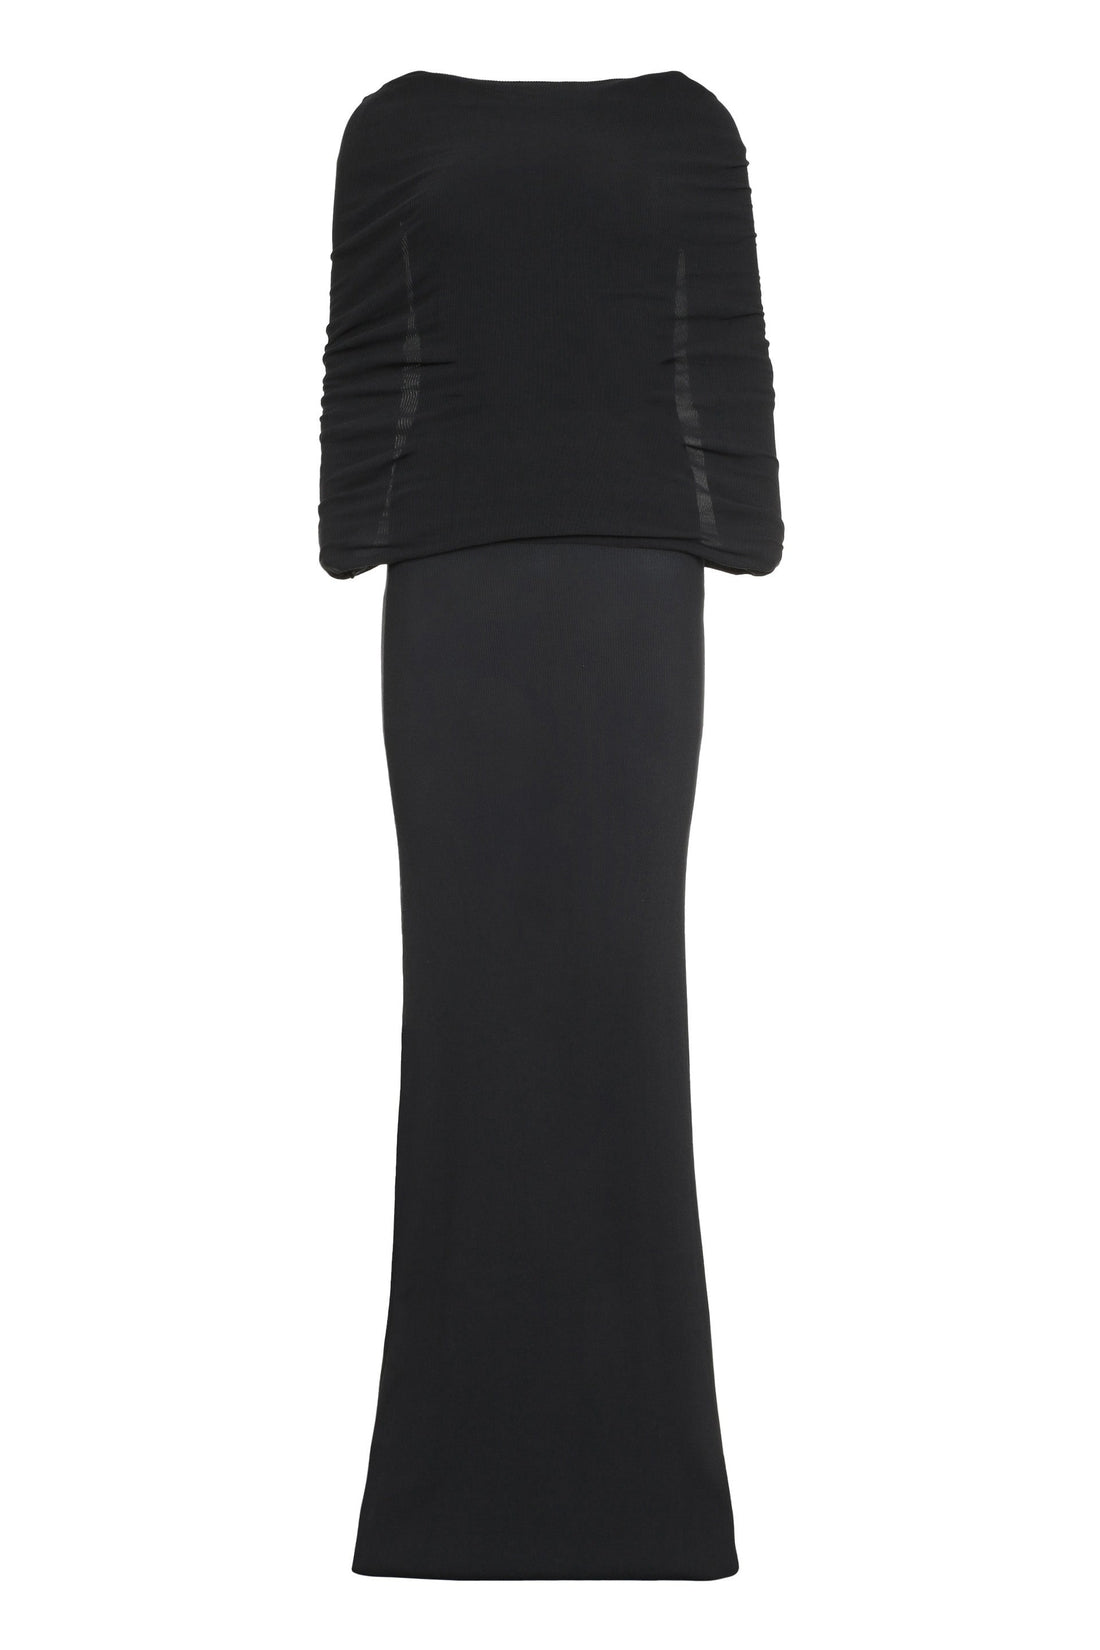 Balenciaga-OUTLET-SALE-Off-the-shoulder dress-ARCHIVIST